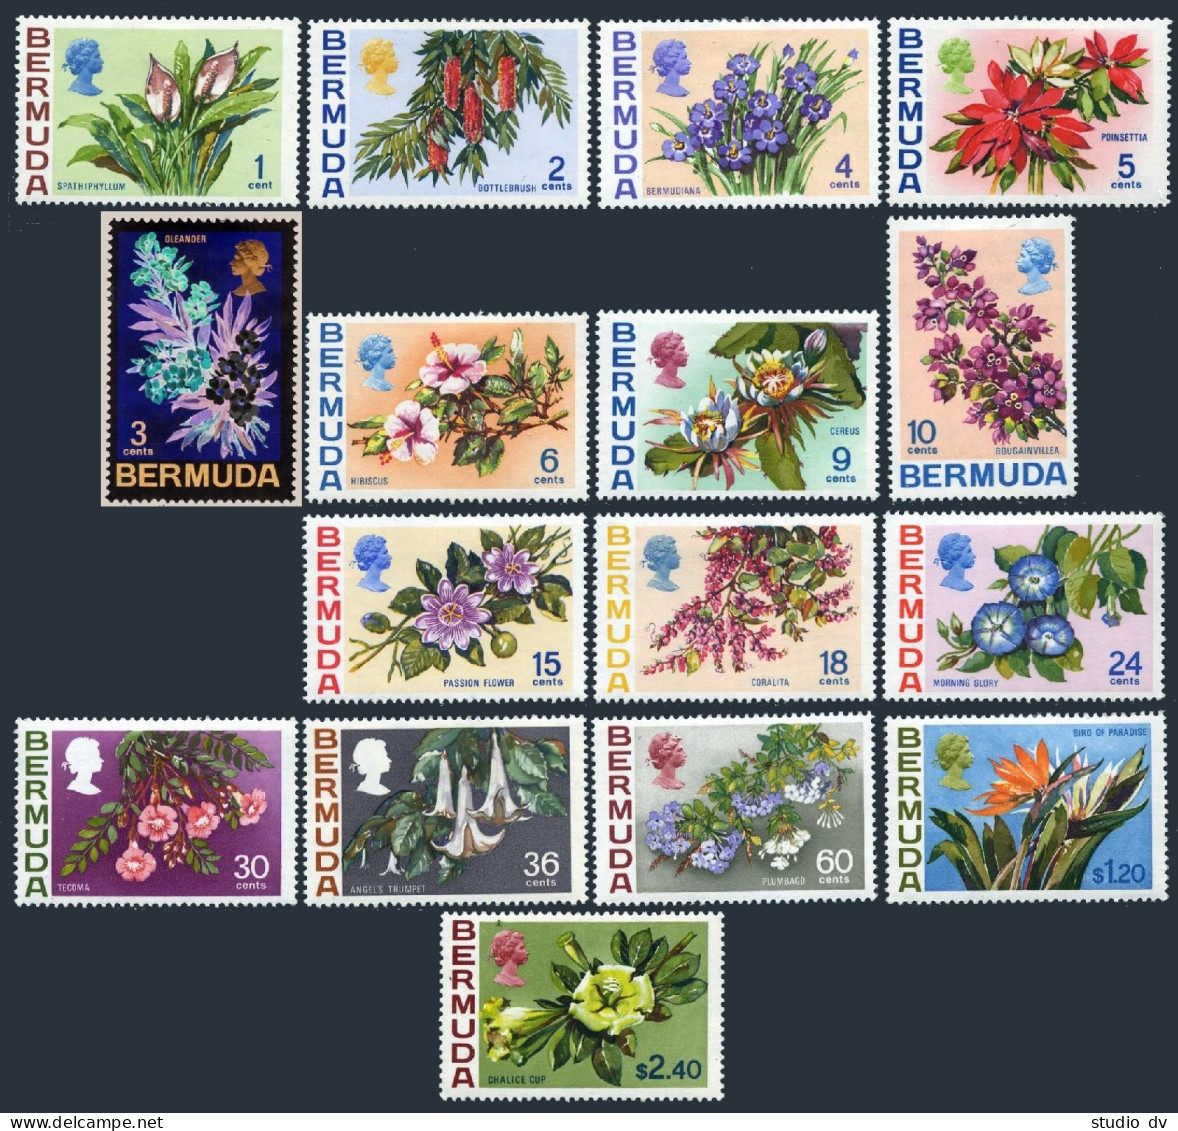 Bermuda 255-271 Missing 257 & 263, Hinged. Michel 244-260. Flowers 1970. - Bermuda